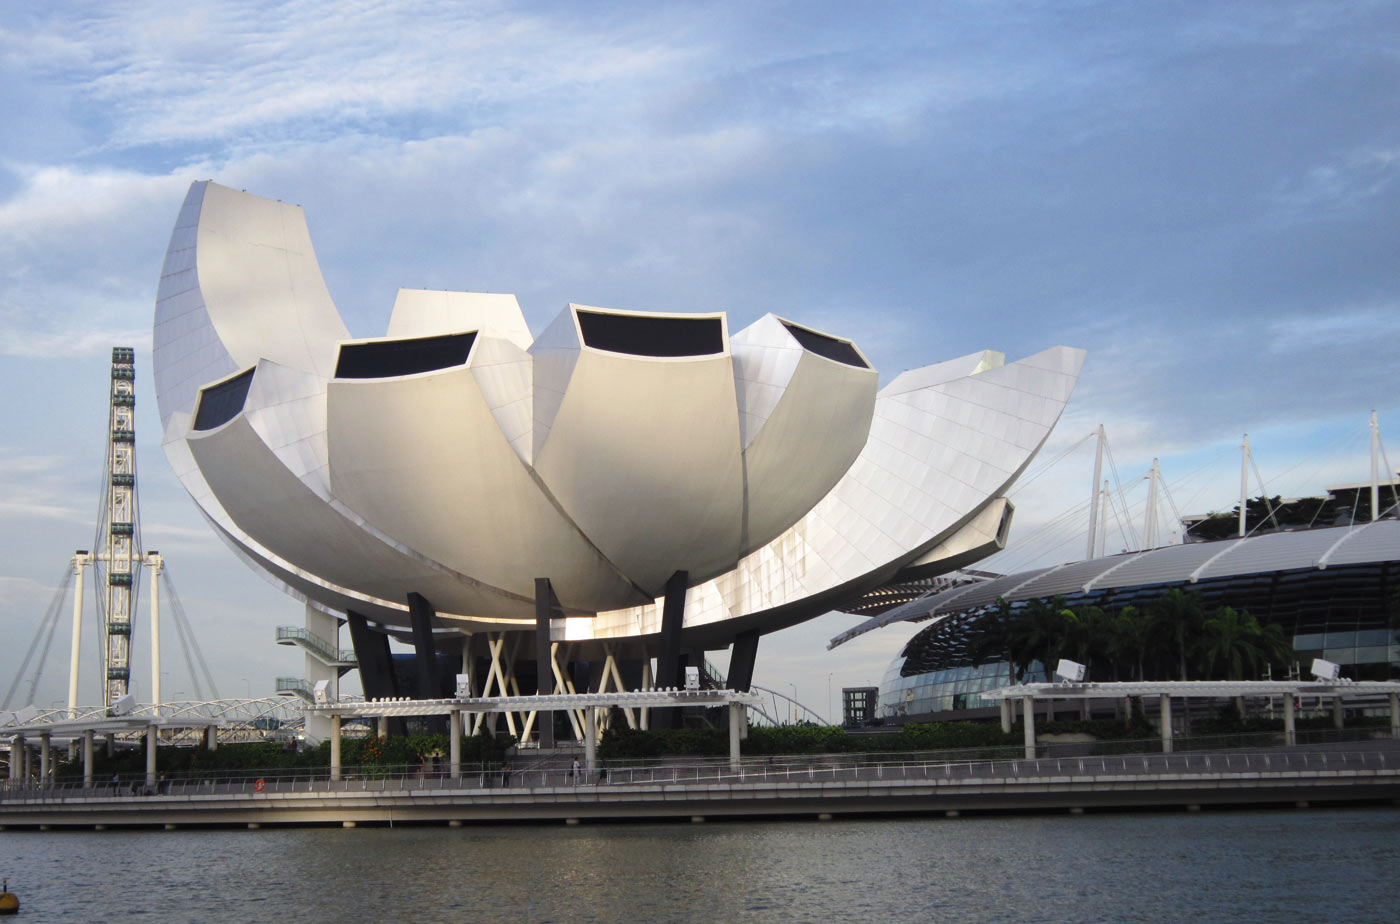 Рис. 2. Архитектурное произведение Моше Сафди, 
по форме напоминающее цветок лотоса, еще называют «приветственной ладонью Сингапура»